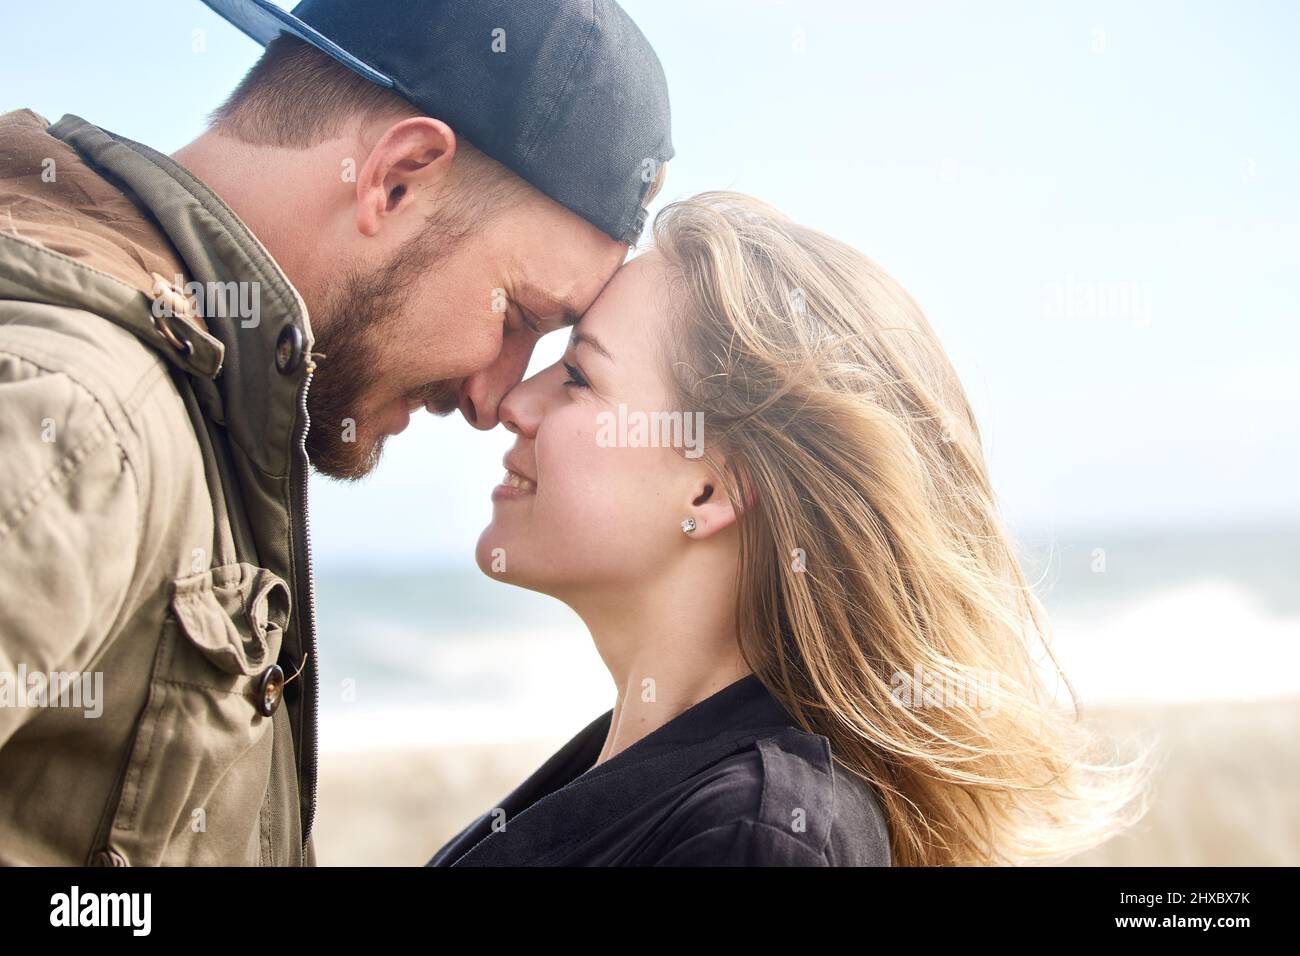 Die Liebe übernehmen zu lassen. Aufnahme eines liebevollen jungen Paares, das im Freien Zeit zusammen verbringt. Stockfoto